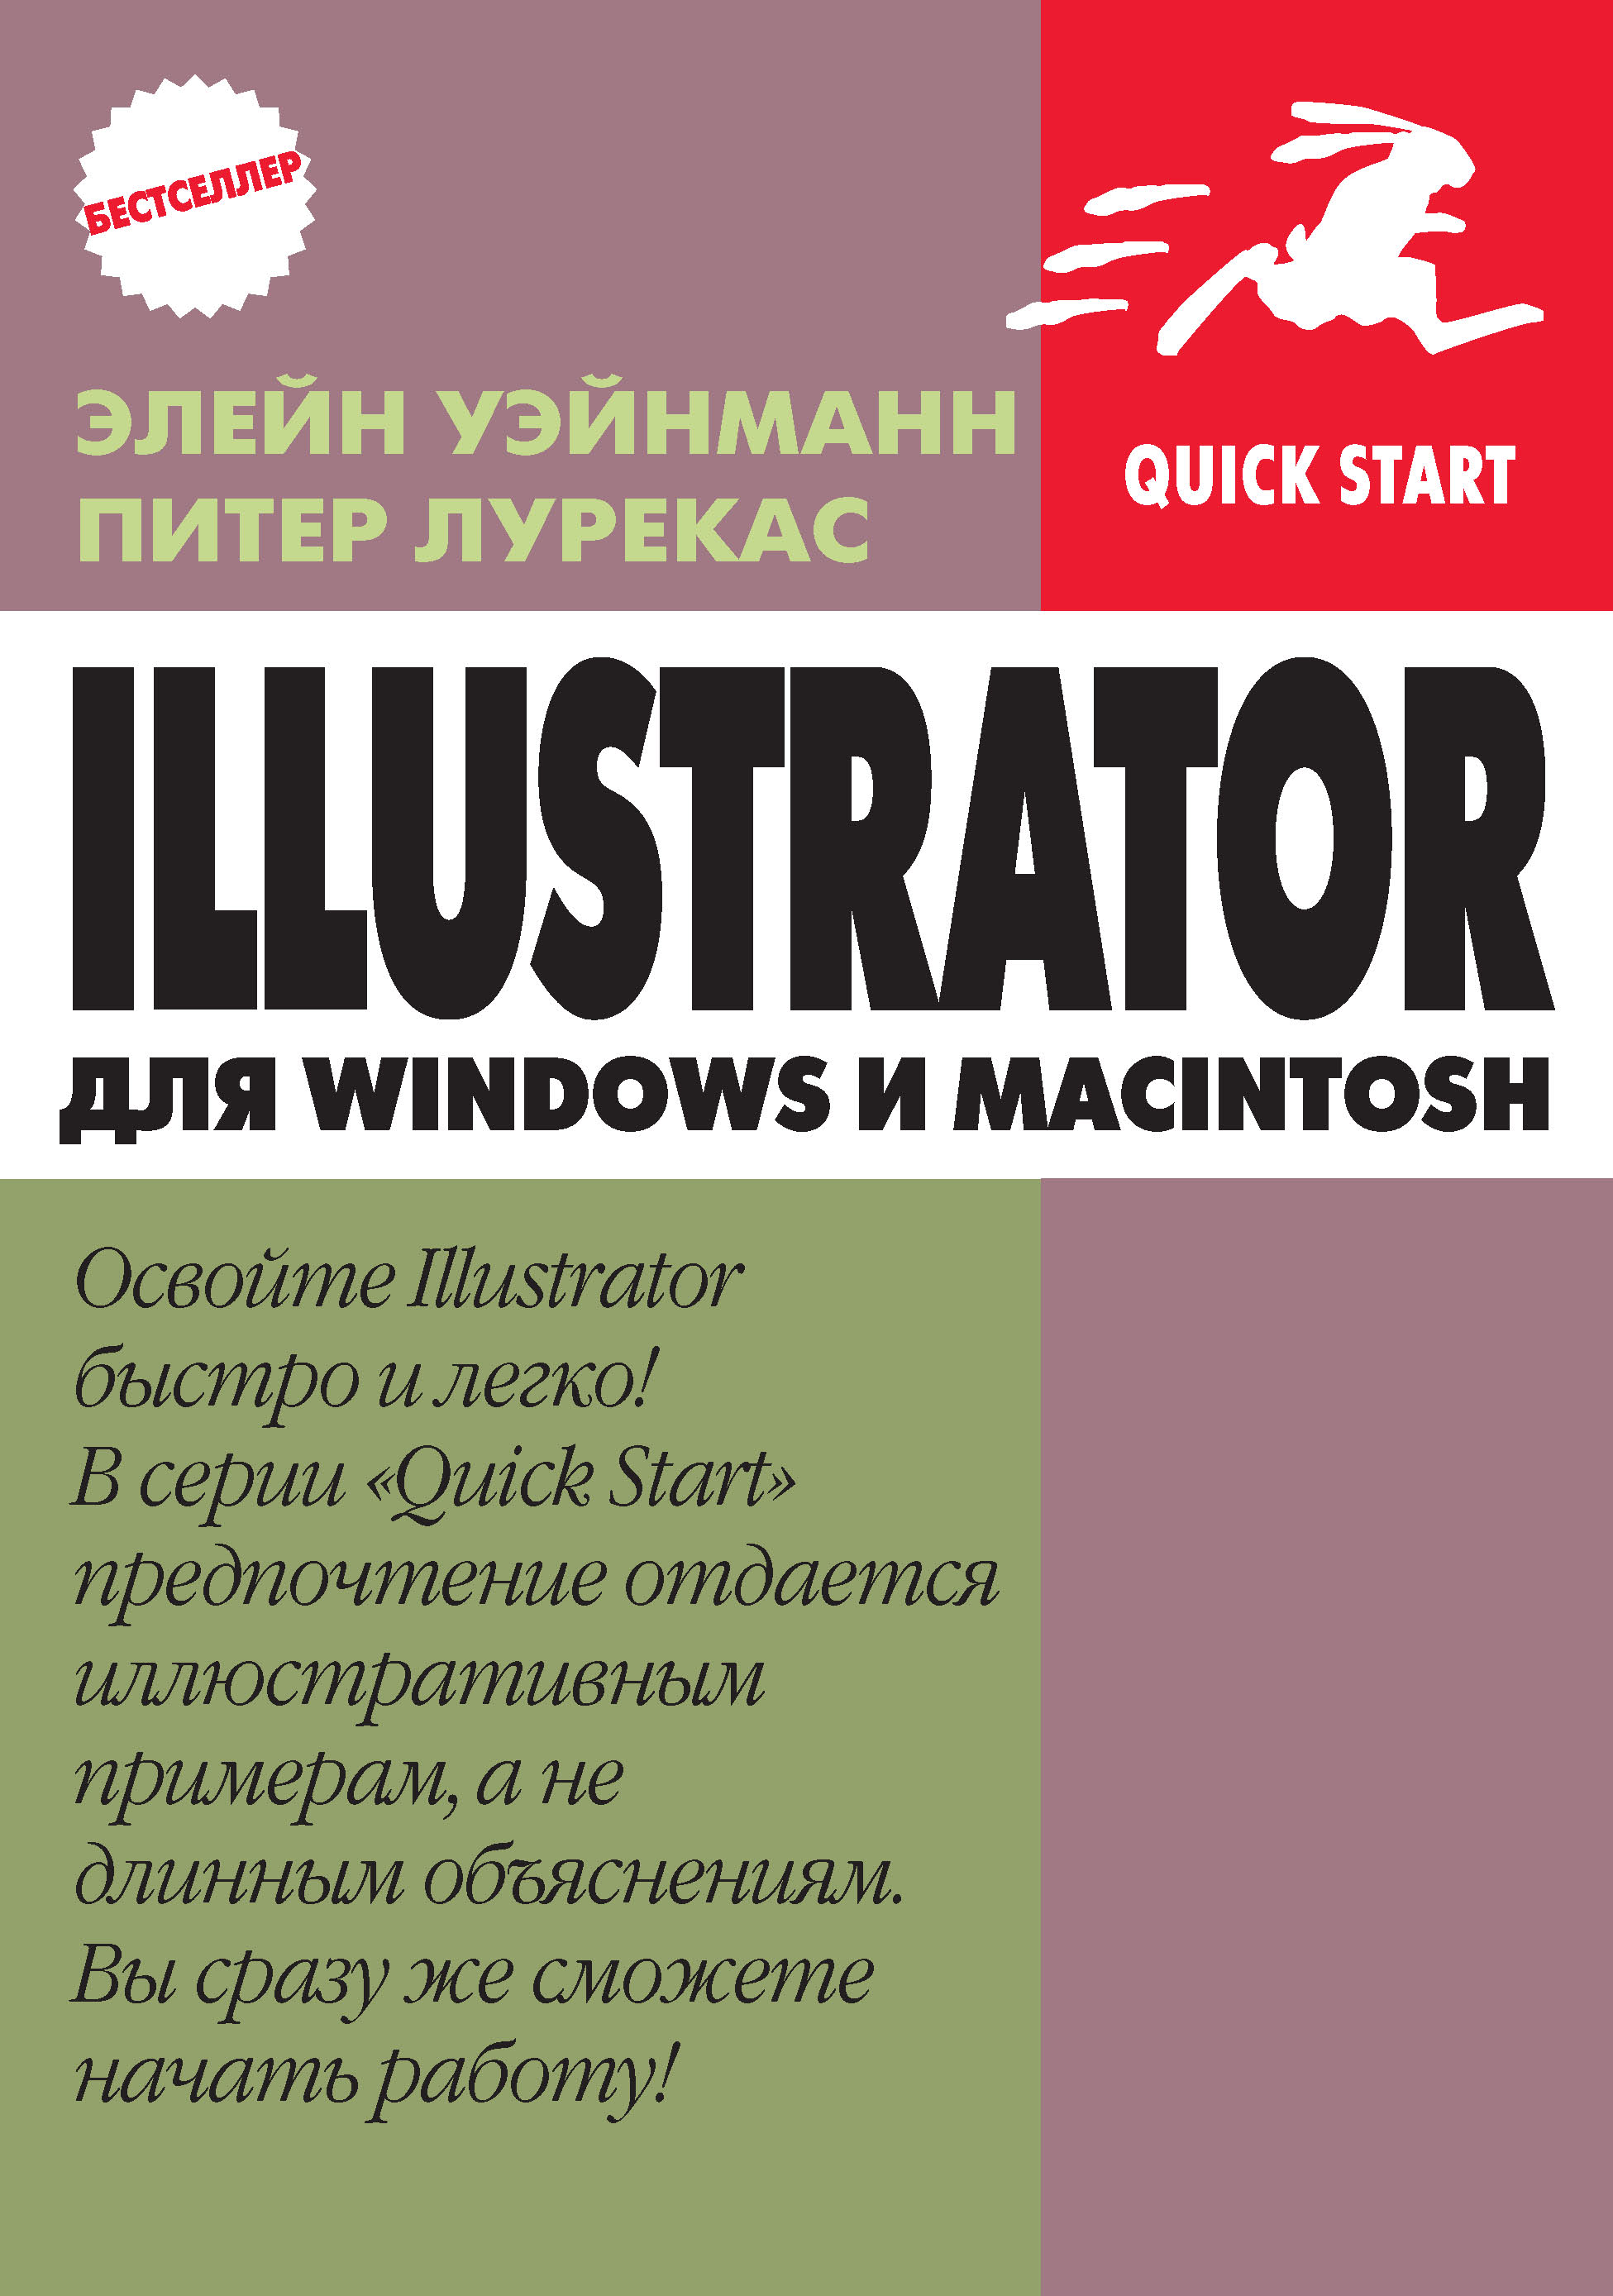 Книга Quick start IIlustrator для Windows и Macintosh созданная Питер Лурекас, Элейн Уэйнманн, А. И. Осипов может относится к жанру зарубежная компьютерная литература, зарубежная образовательная литература, программы, самоучители. Стоимость электронной книги IIlustrator для Windows и Macintosh с идентификатором 48411327 составляет 349.00 руб.